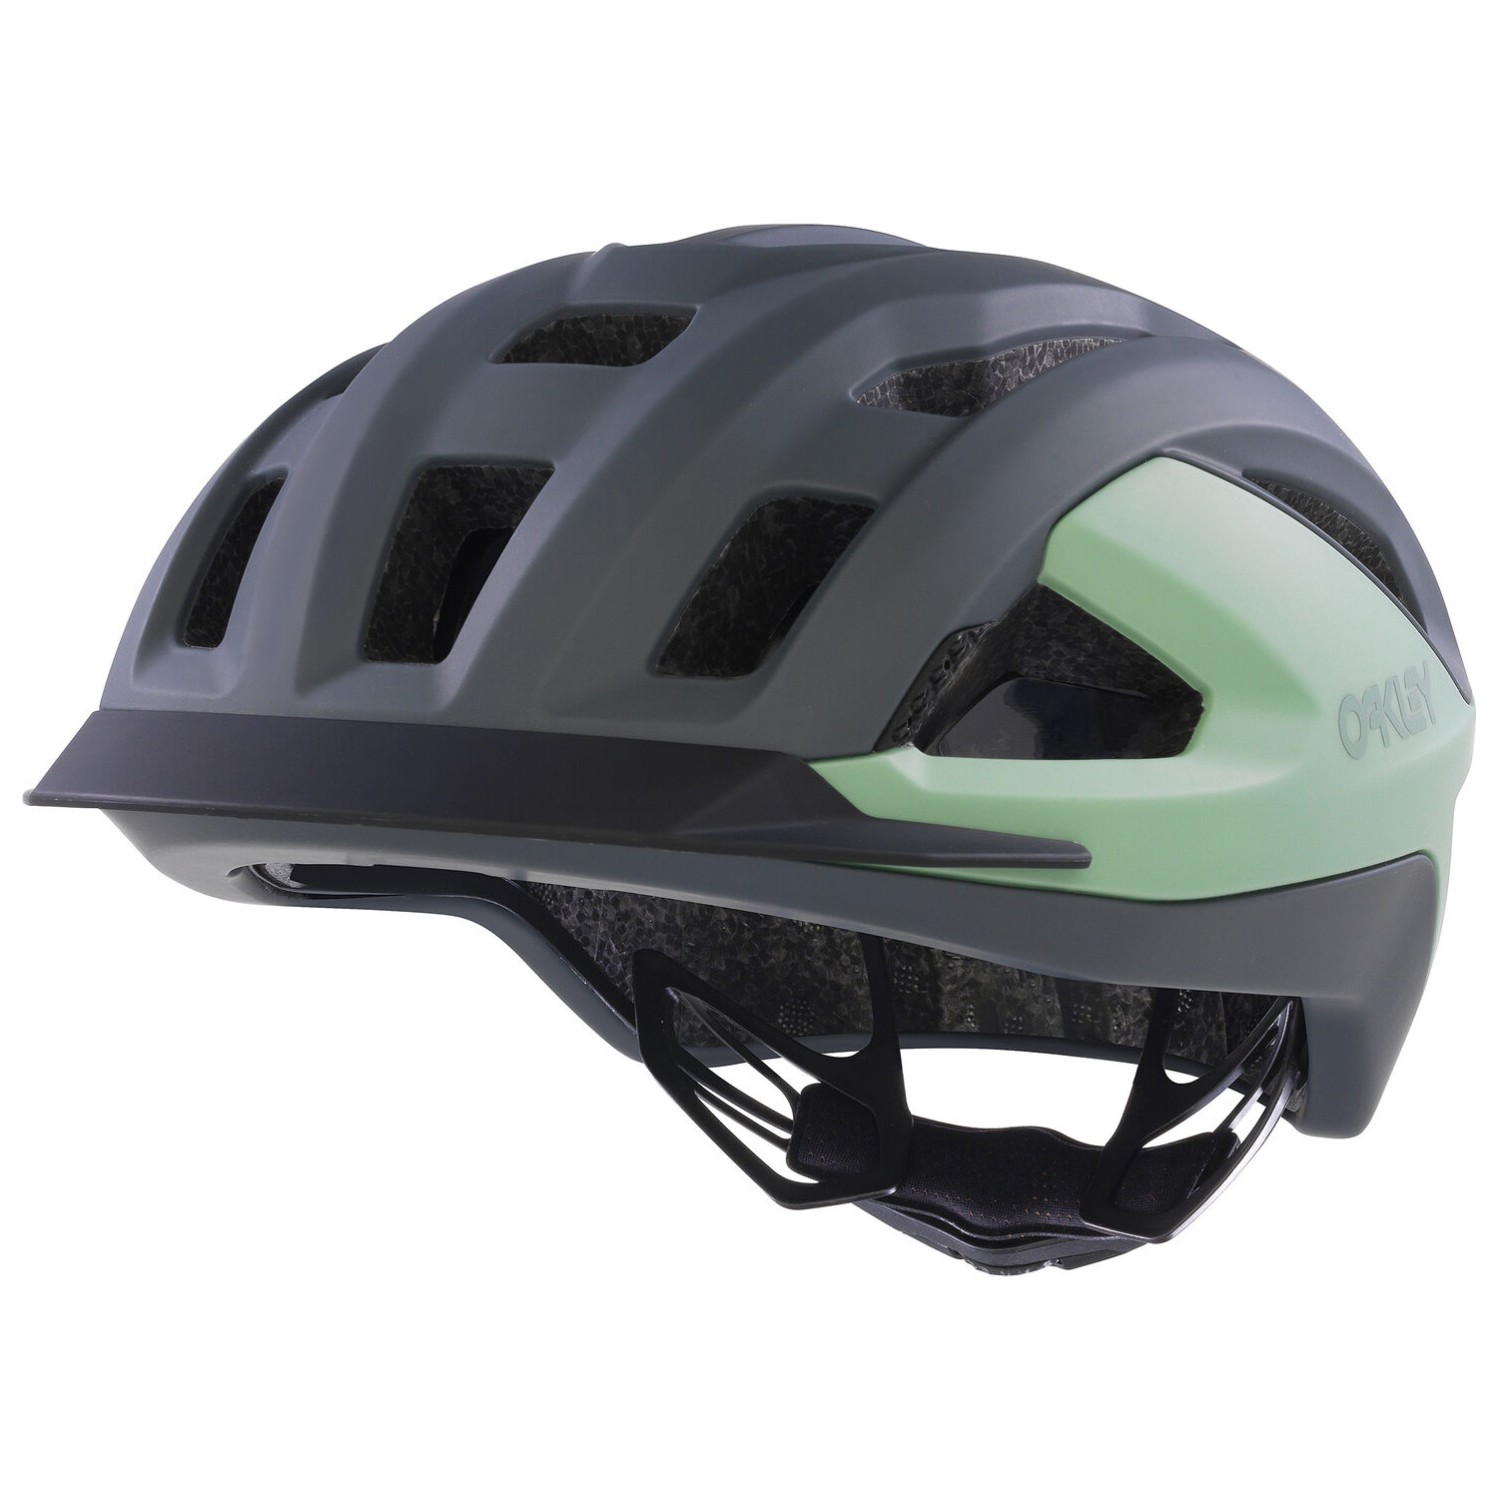 Велосипедный шлем Oakley ARO3 Allroad, цвет Matte Dark Gray/Jade